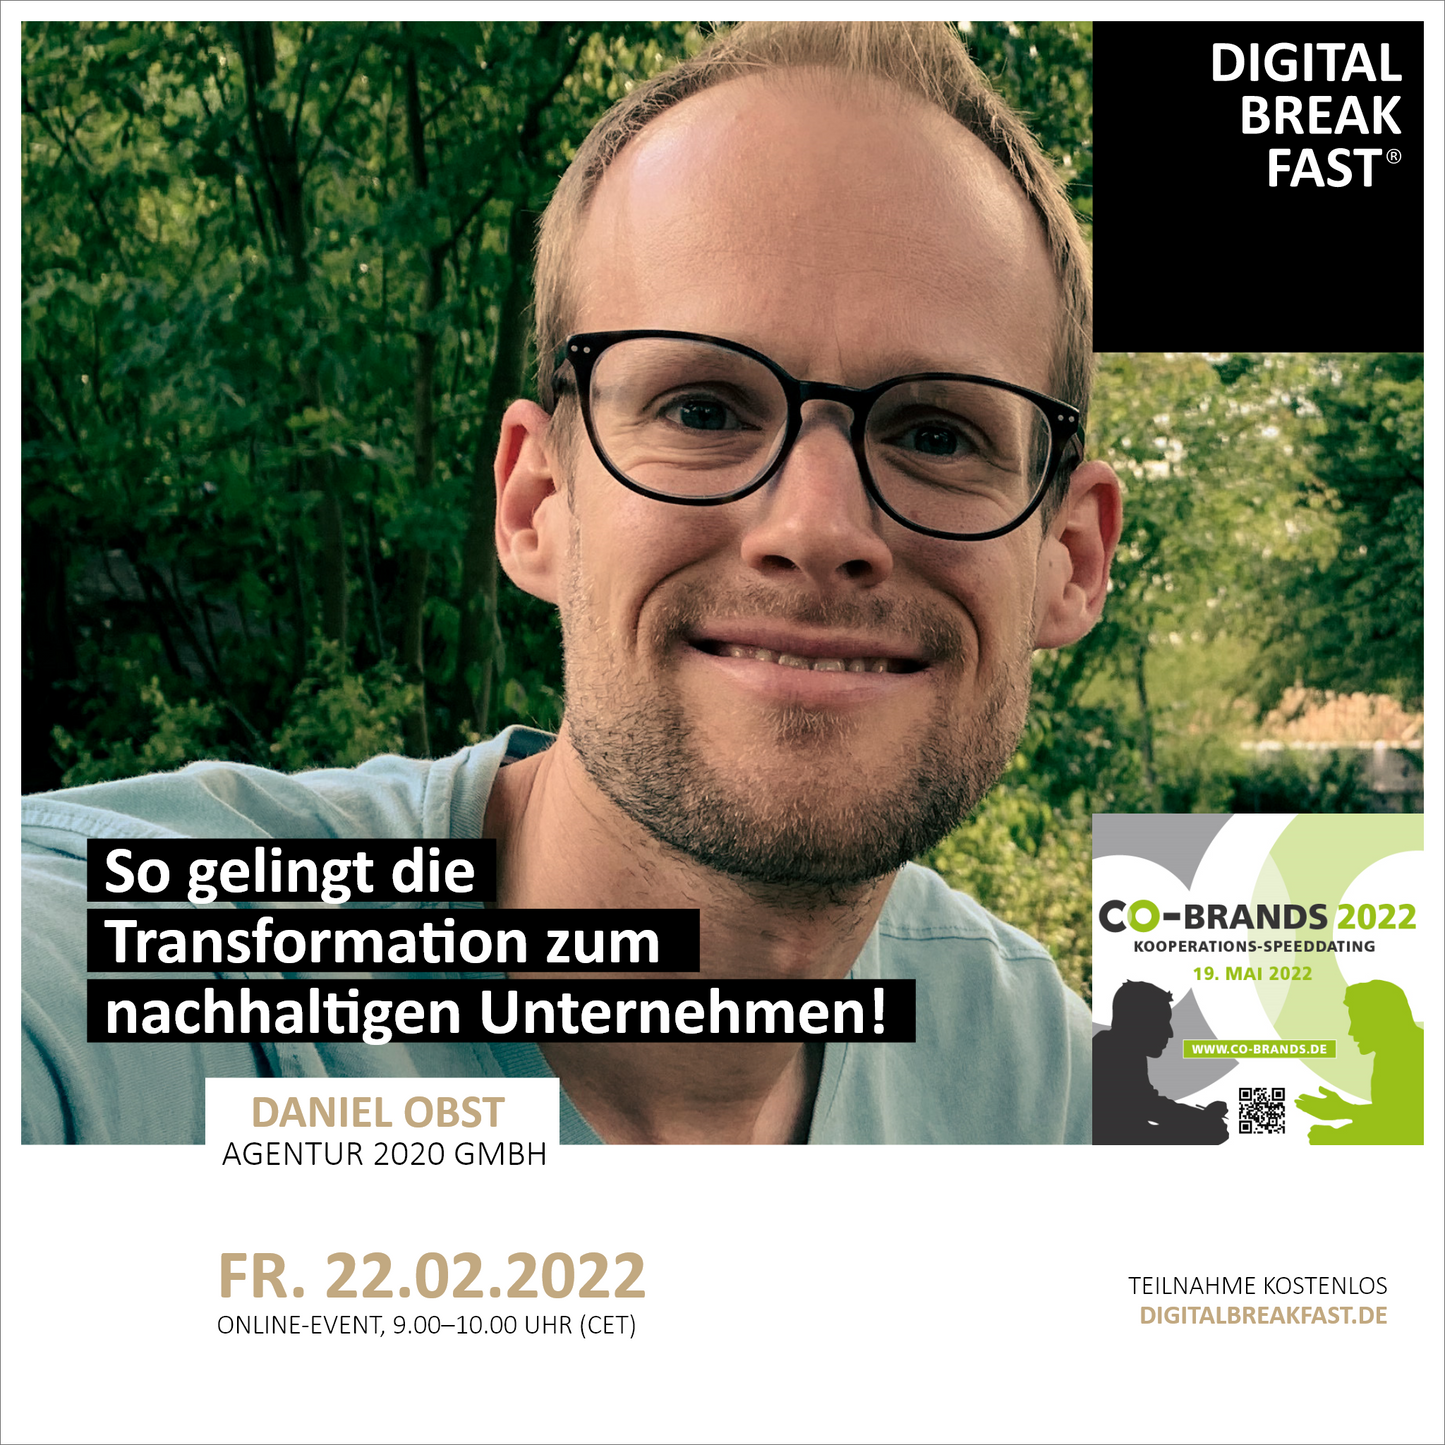 22.02.2022 | "So gelingt die Transformation zum nachhaltigen Unternehmen!" | Daniel Obst | Agentur 2020 GmbH